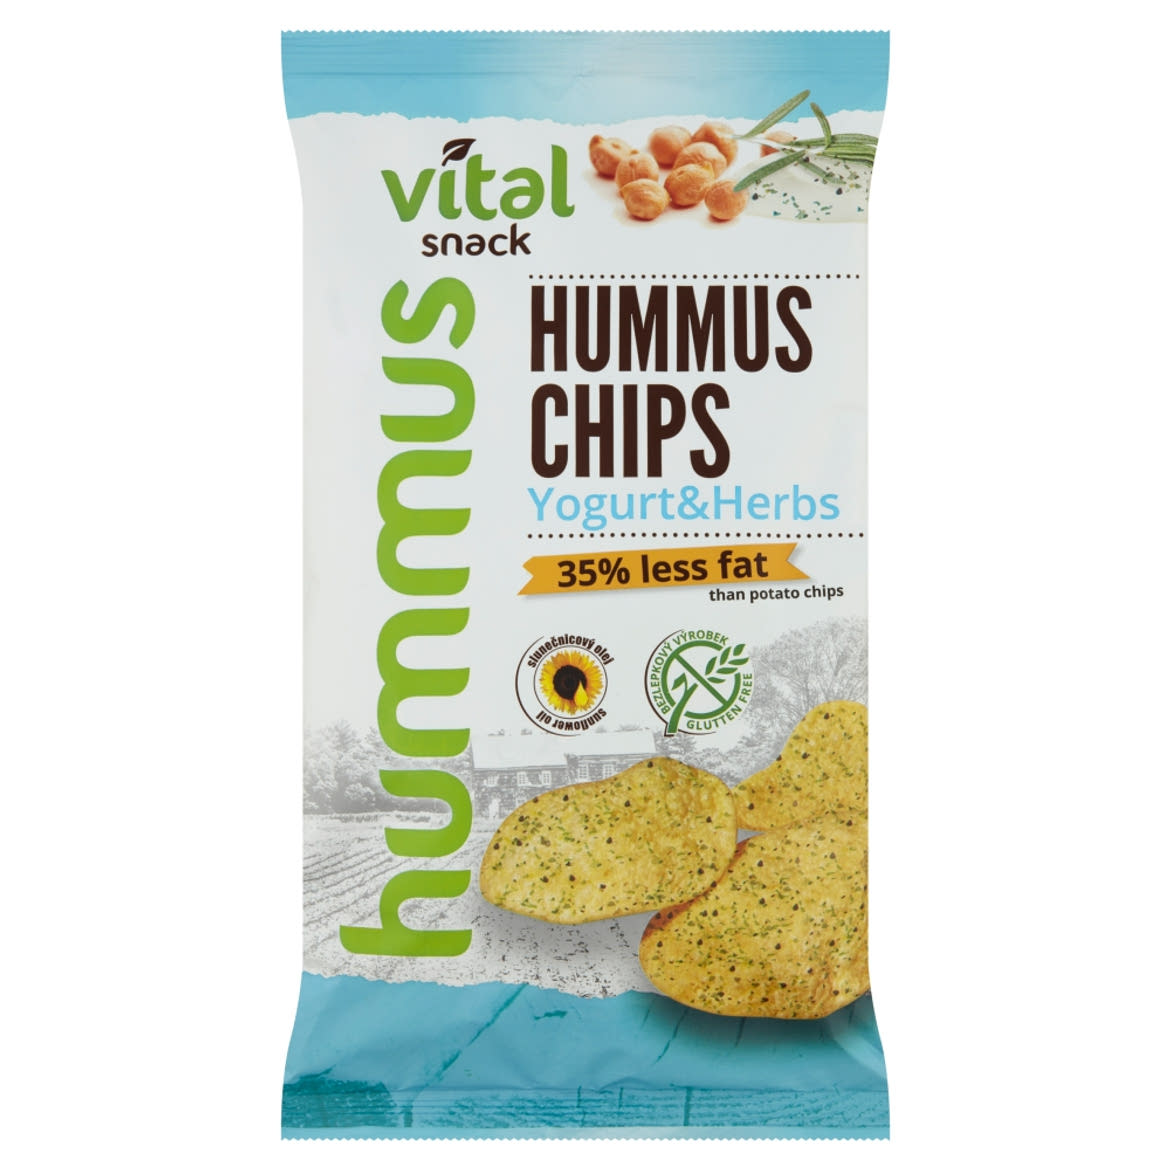 Vital Snack sült hummusz chips joghurtos-zöldfűszeres ízesítéssel